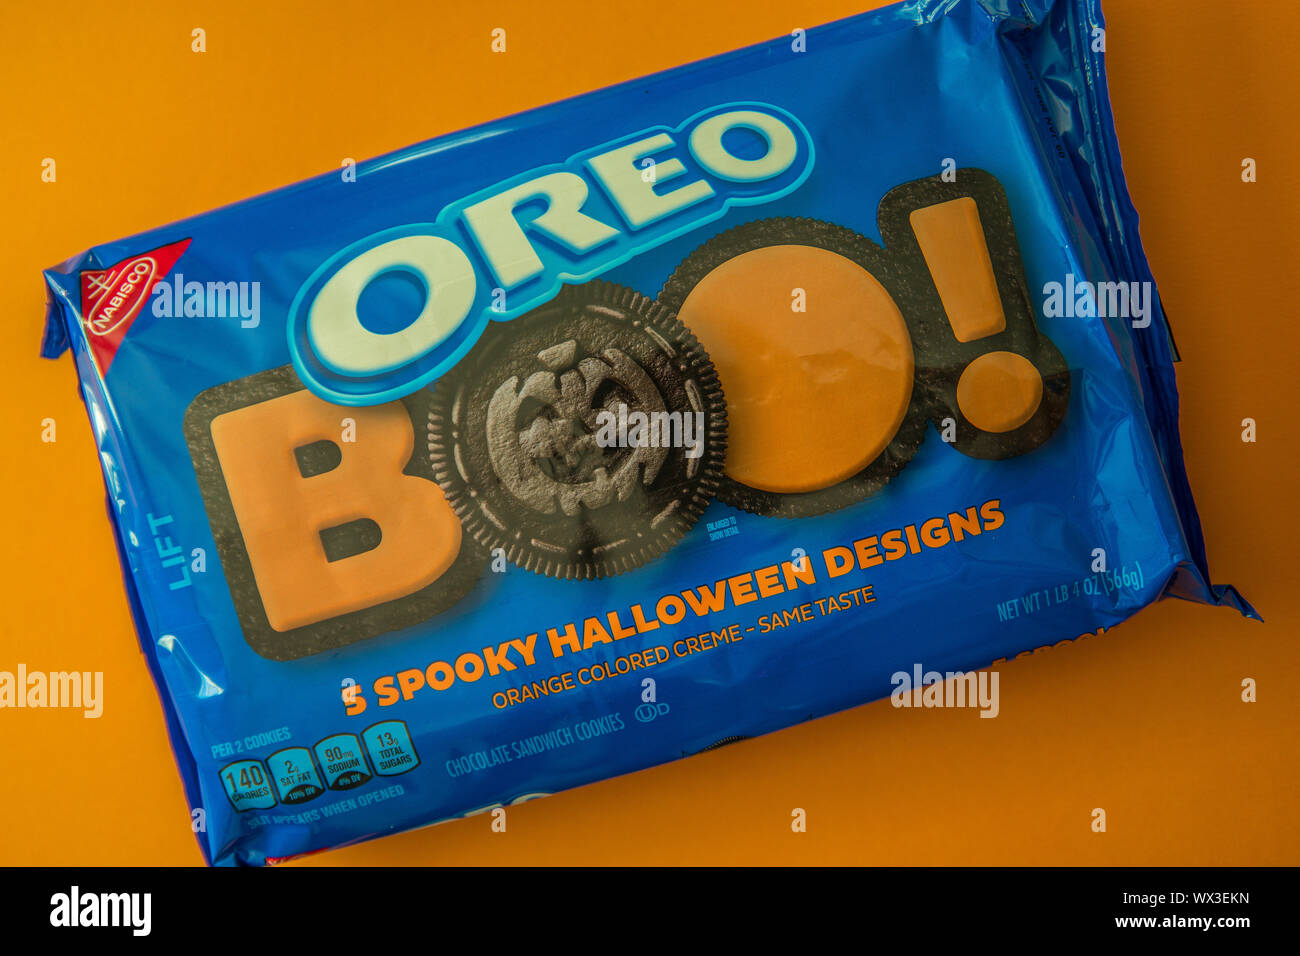 Eine Ungeoffnete Packung Von Oreo Buh Halloween Cookies Auf Einem Betrachtungswinkel Closeup Stockfotografie Alamy